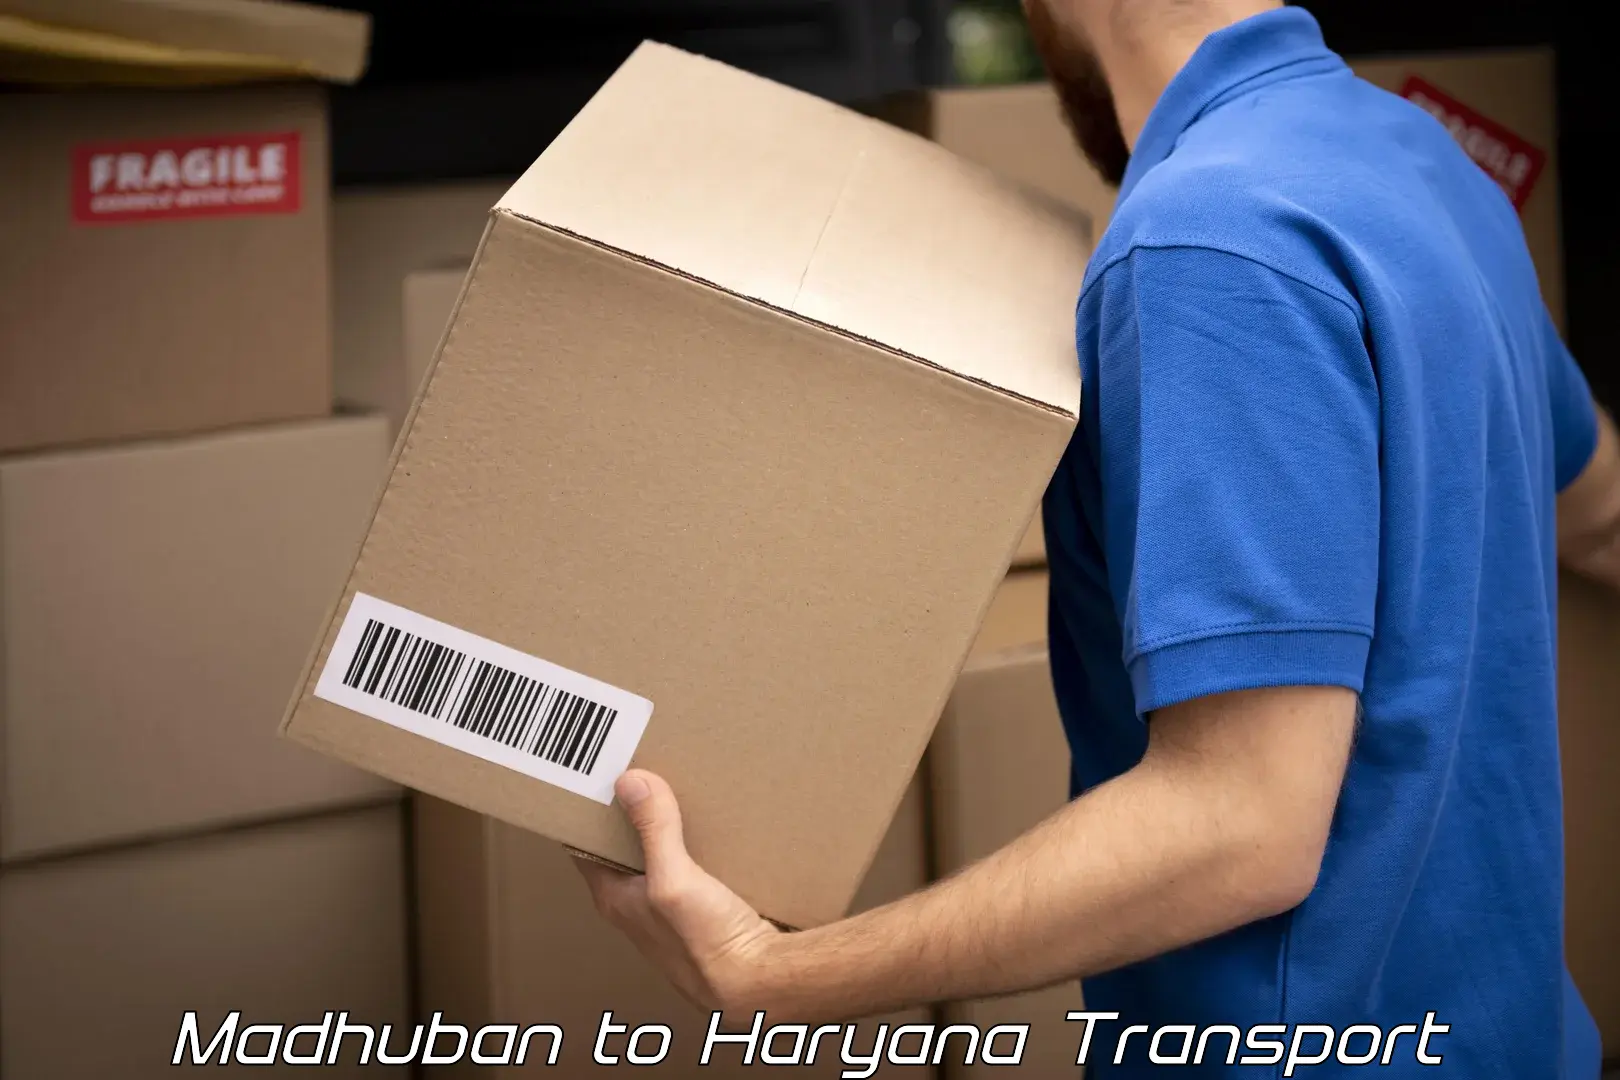 Shipping partner Madhuban to Gohana